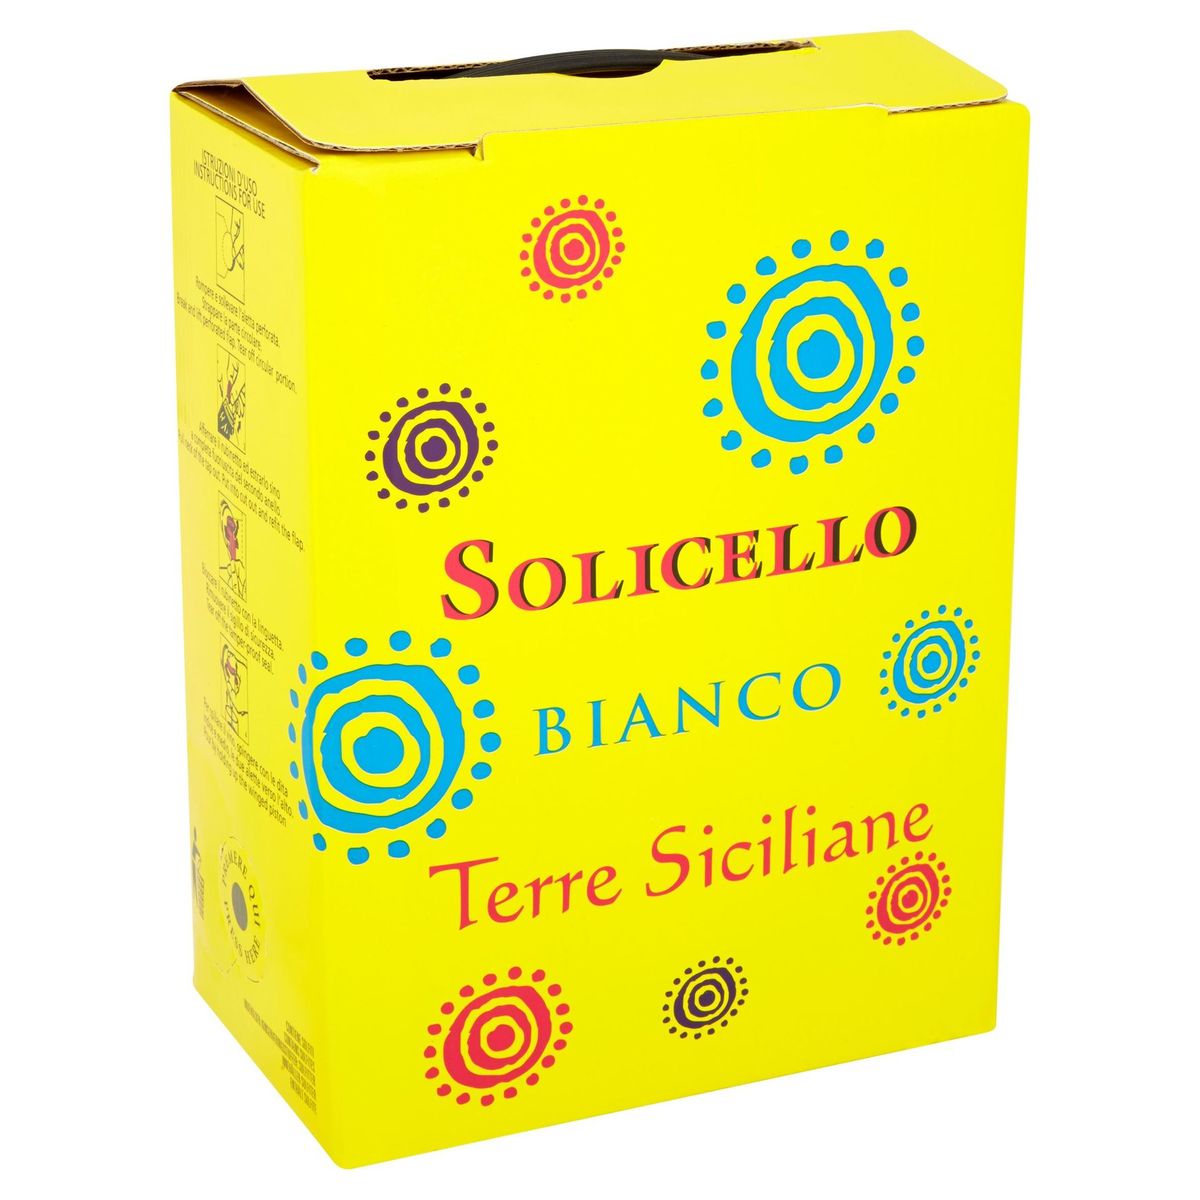 Solicello Bianco terre siciliane 3000 ml